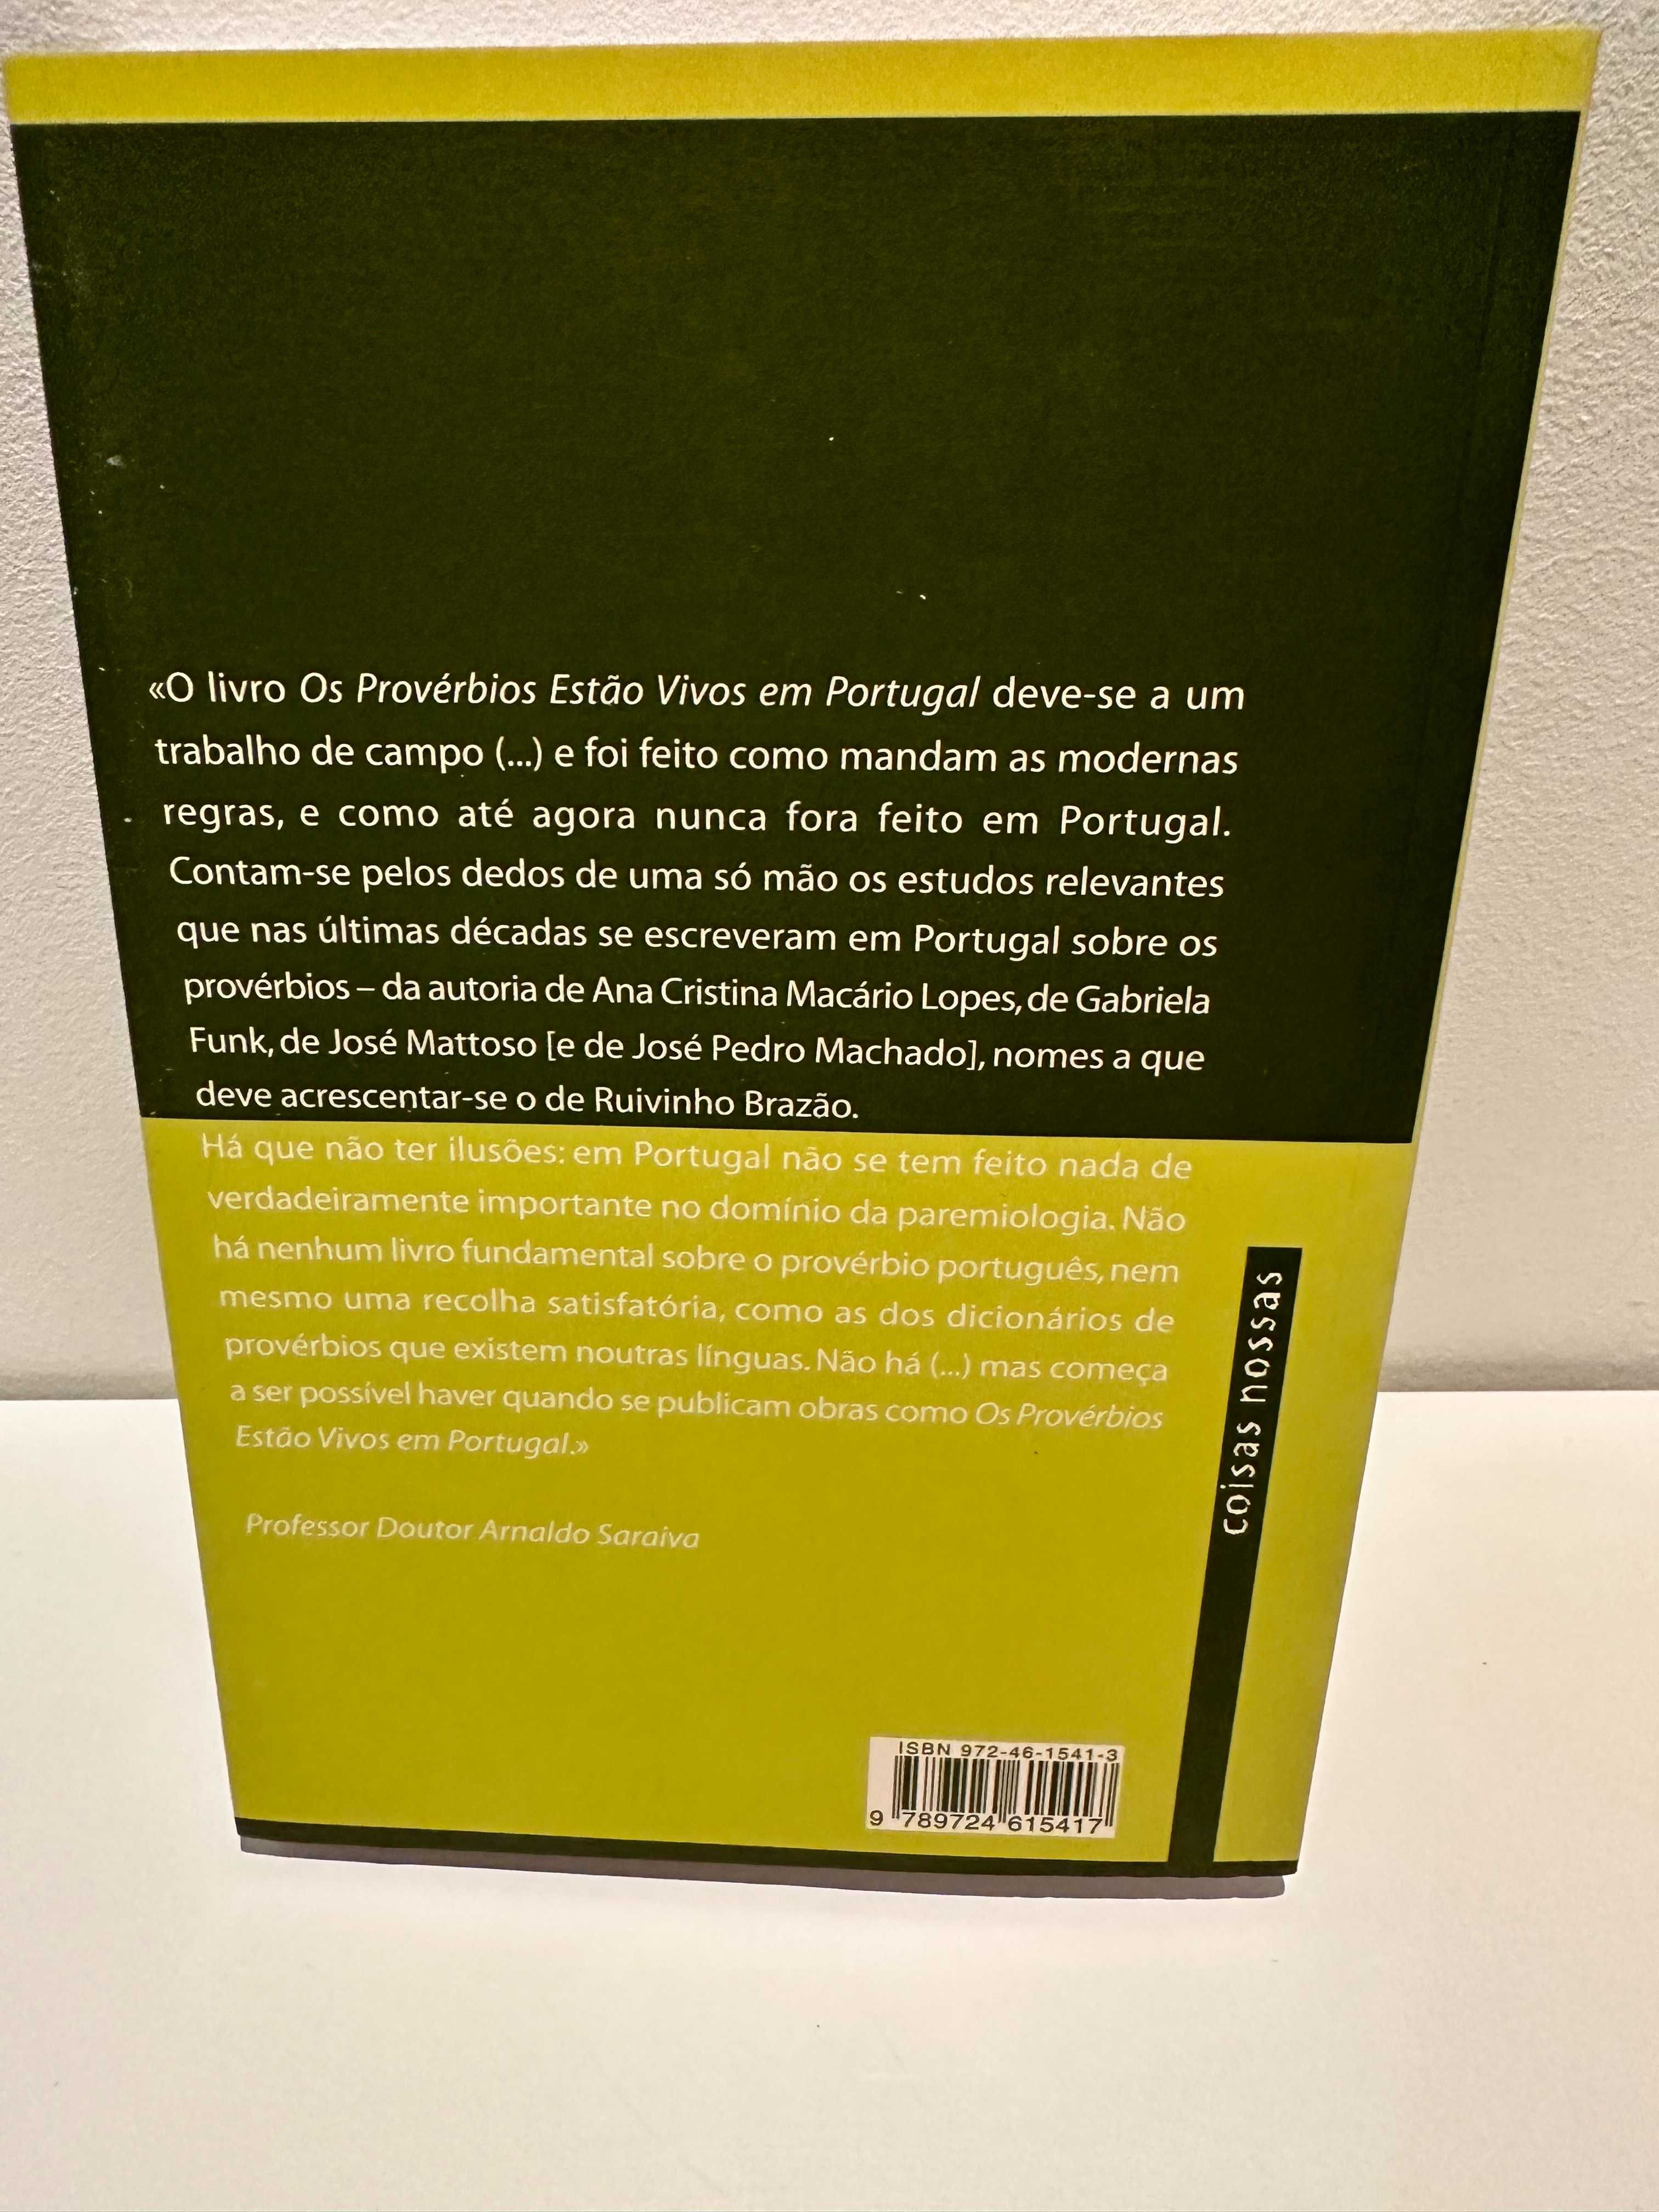 Livro "Os provérbios estão vivos em Portugal"